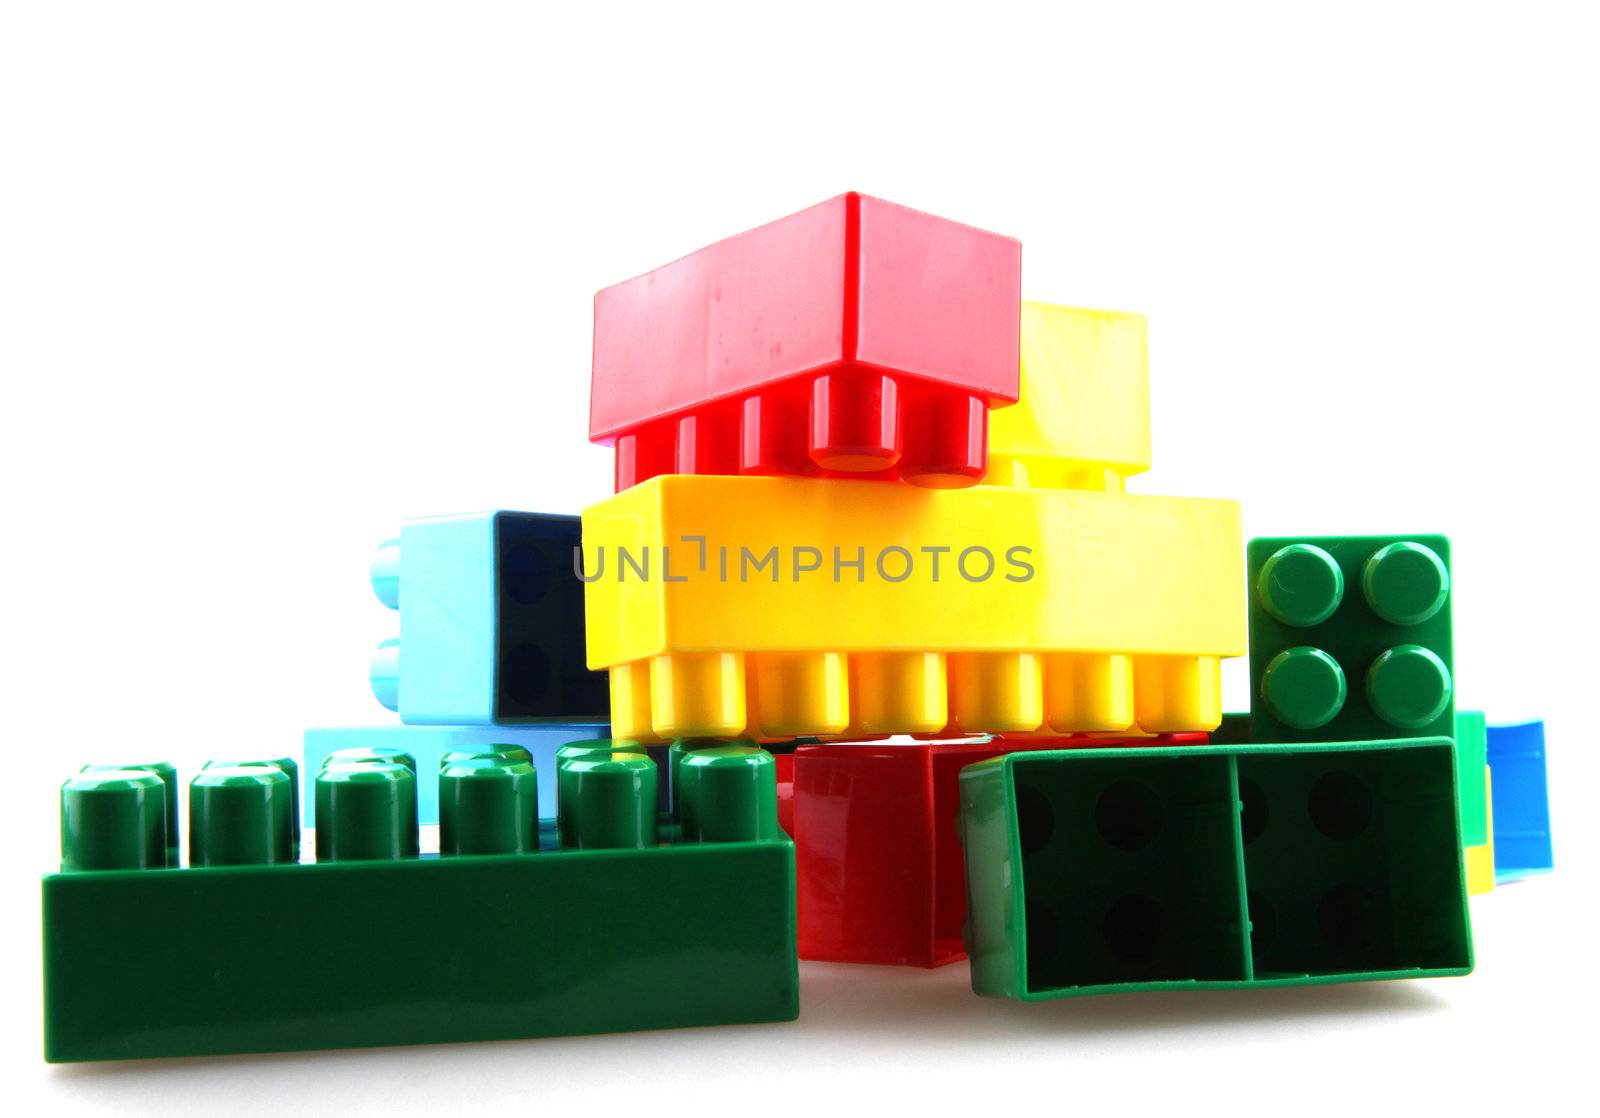 Plastic building blocks.